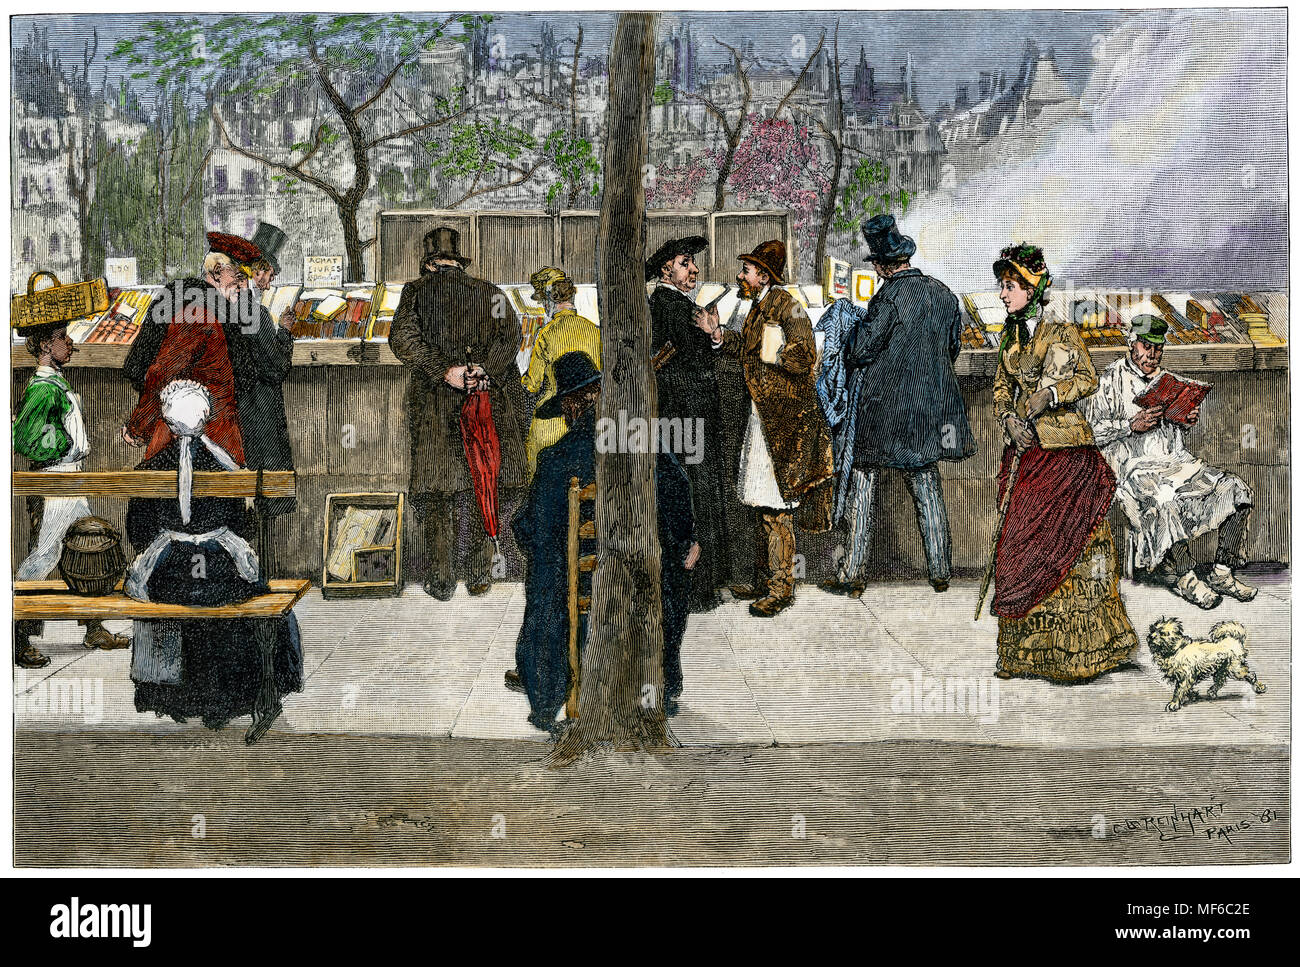 Kiosque sur un boulevard de Paris le long de la Seine, 1880. À la main, gravure sur bois Banque D'Images